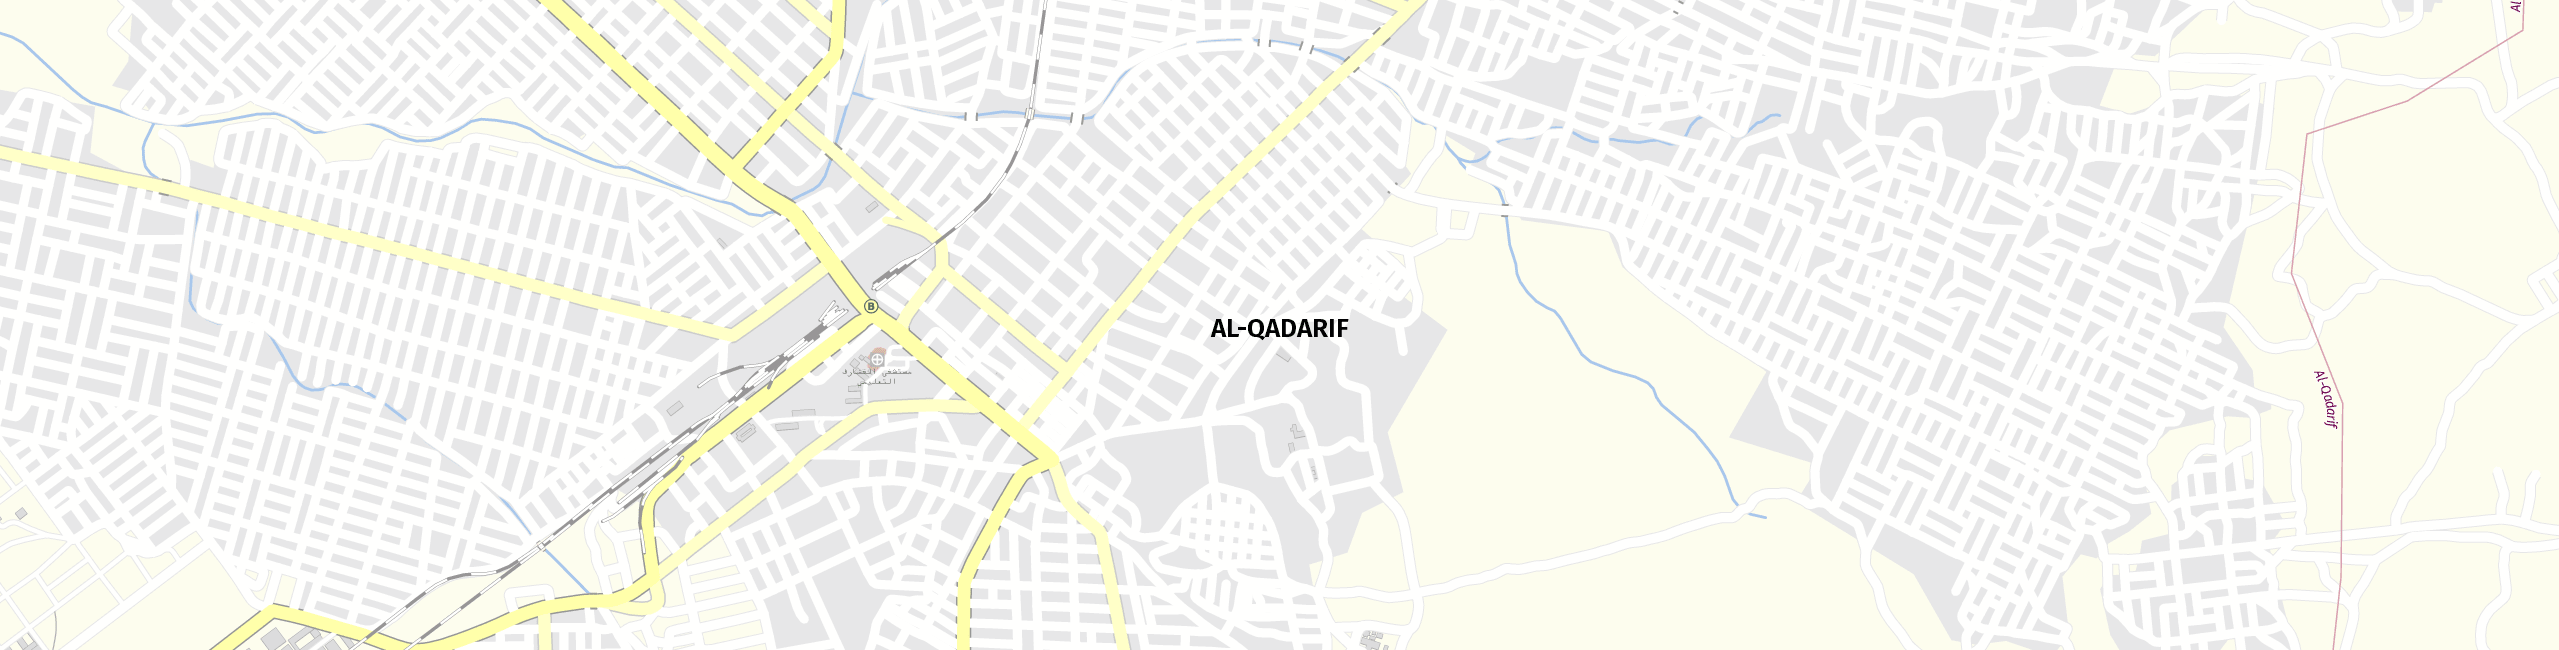 Stadtplan Al-Qadarif zum Downloaden.